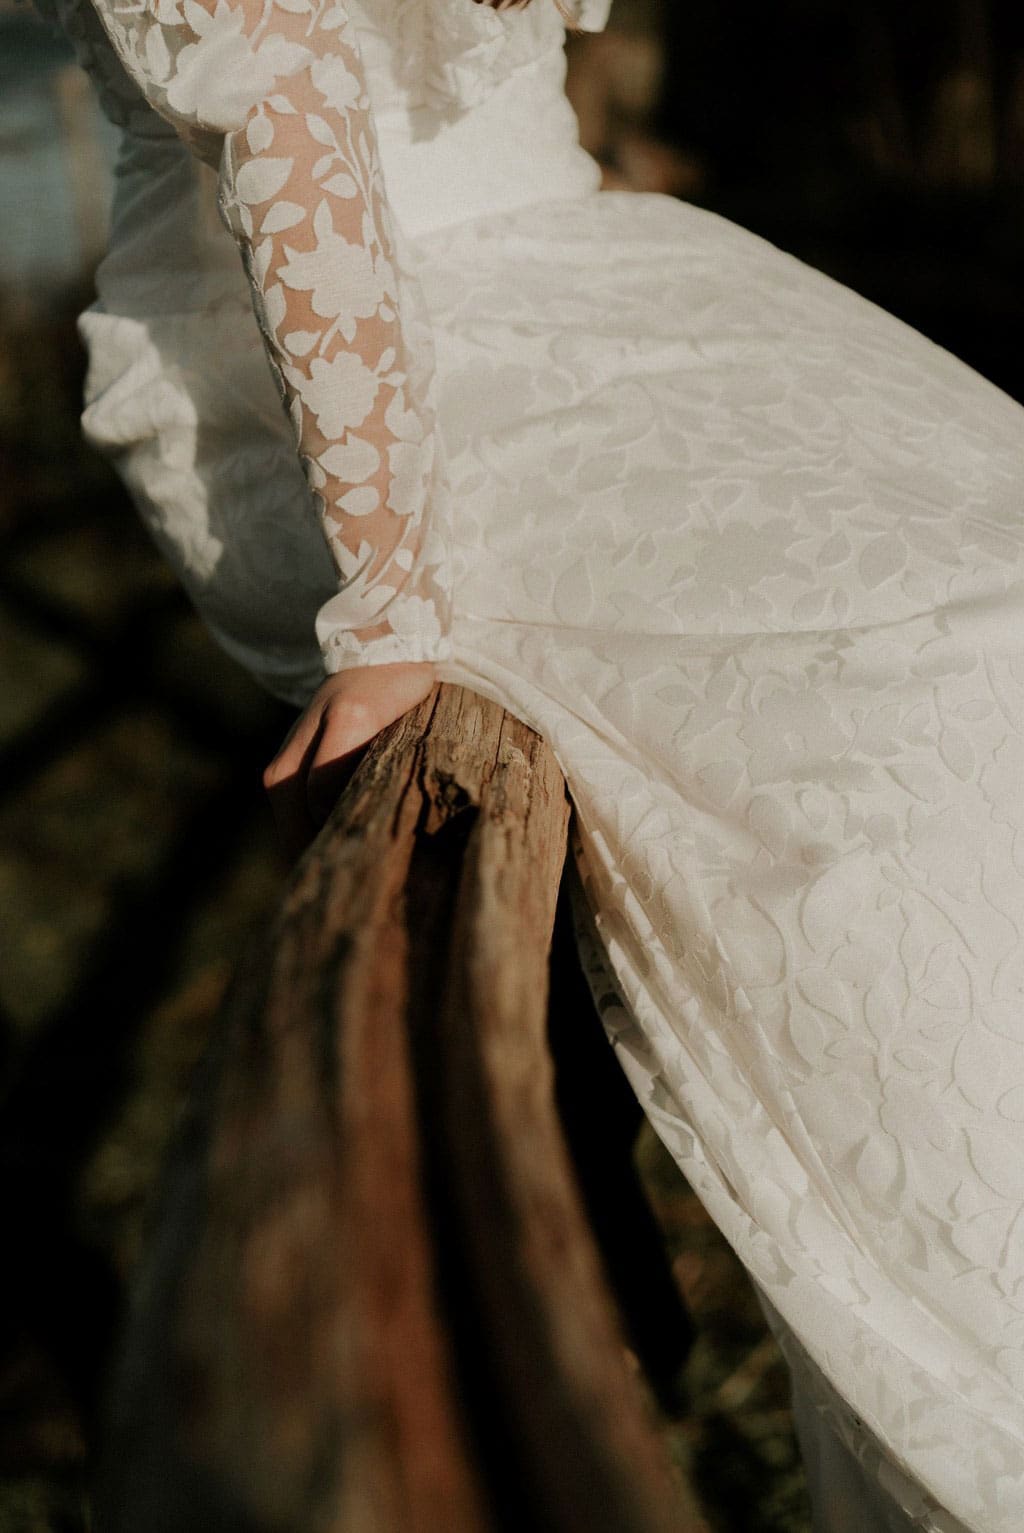 Détails tissu robe de mariée transparent fleurs blanches floquées